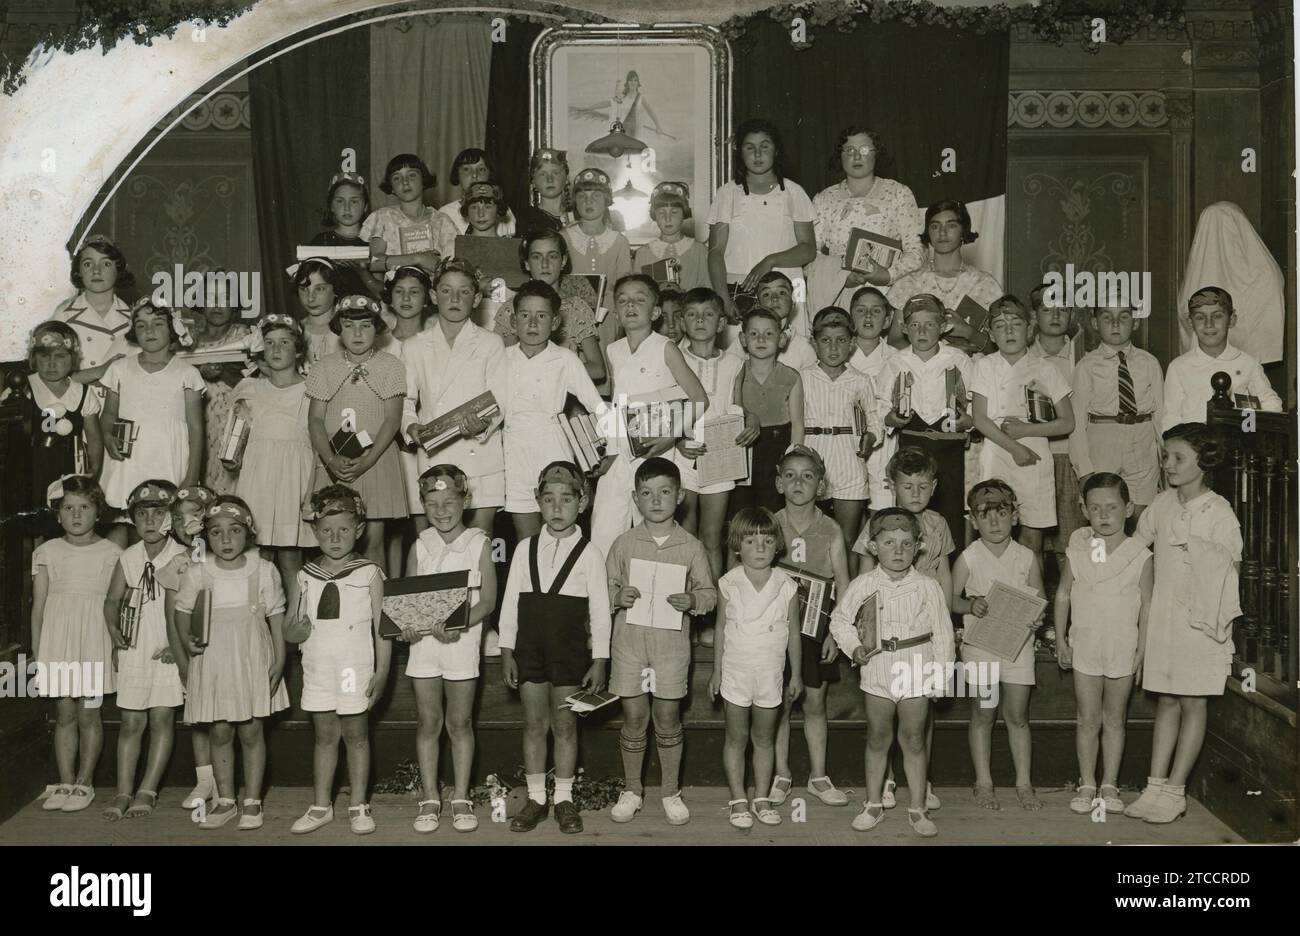 La Coruña, luglio 1933. Gli studenti premiati alla cerimonia tenutasi presso il Secondary Education Institute, alla fine dell'anno accademico 1932-1933. Crediti: Album / Archivo ABC / foto Blanco Foto Stock